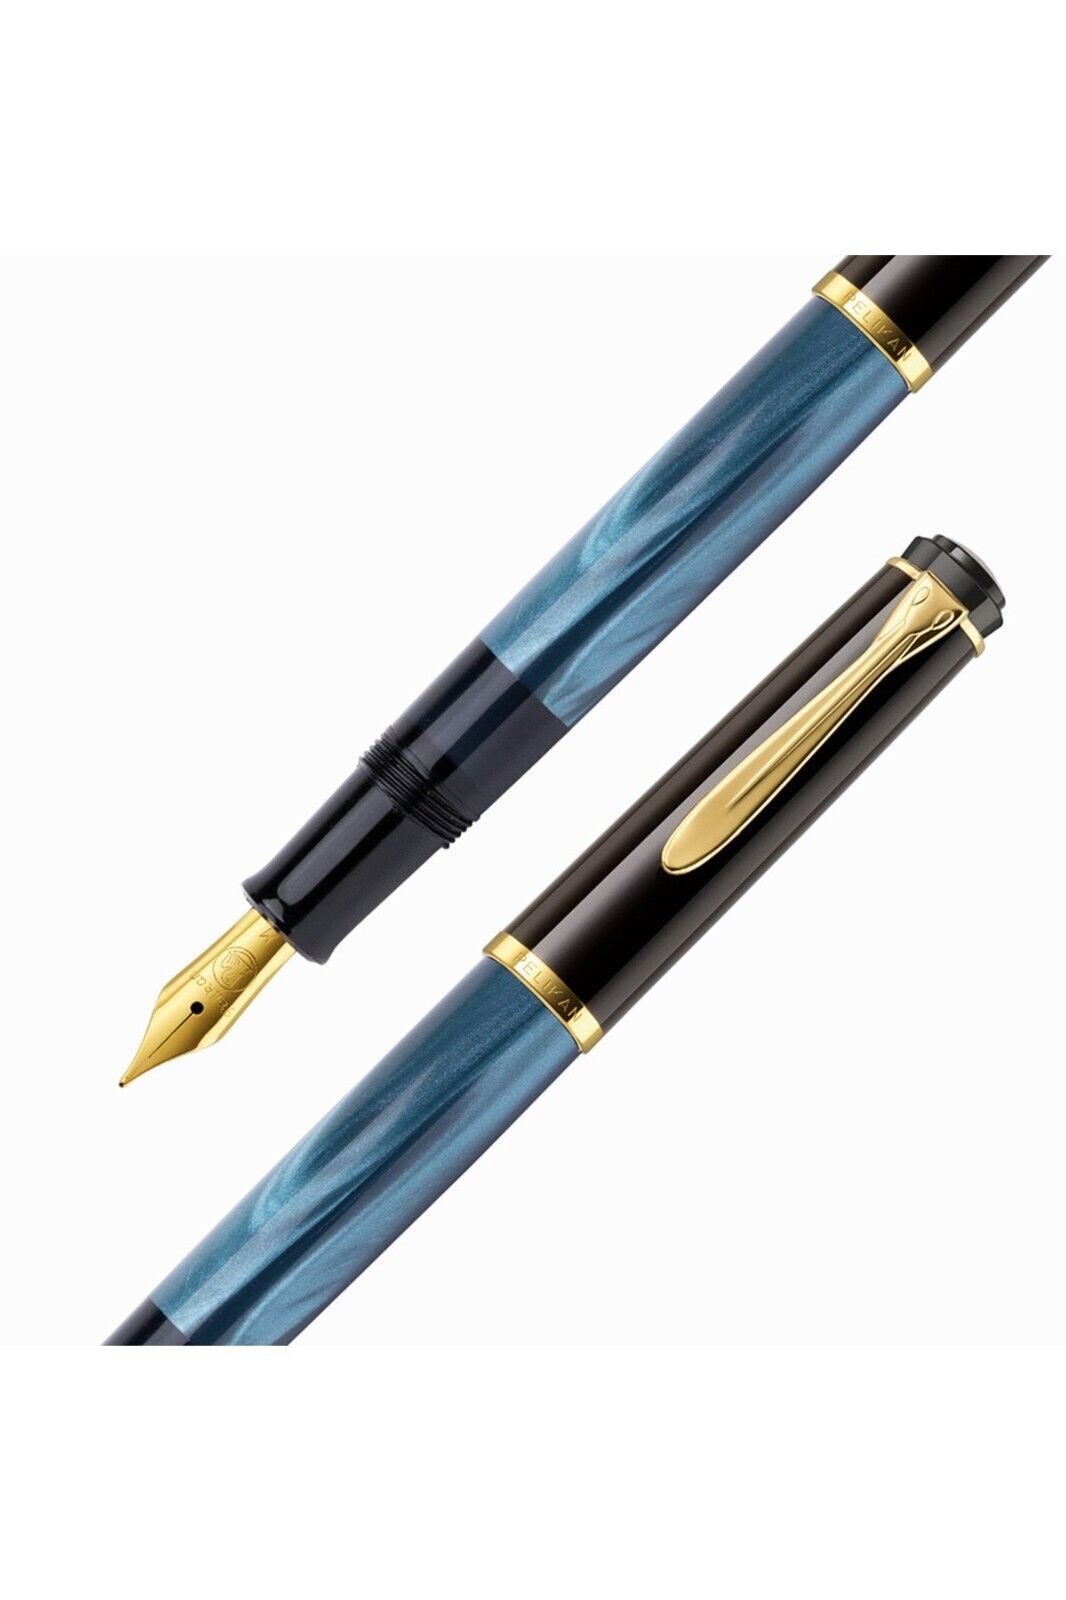 Pelikan special M200 Pearl Blue Fountain  Pen - EF Nib